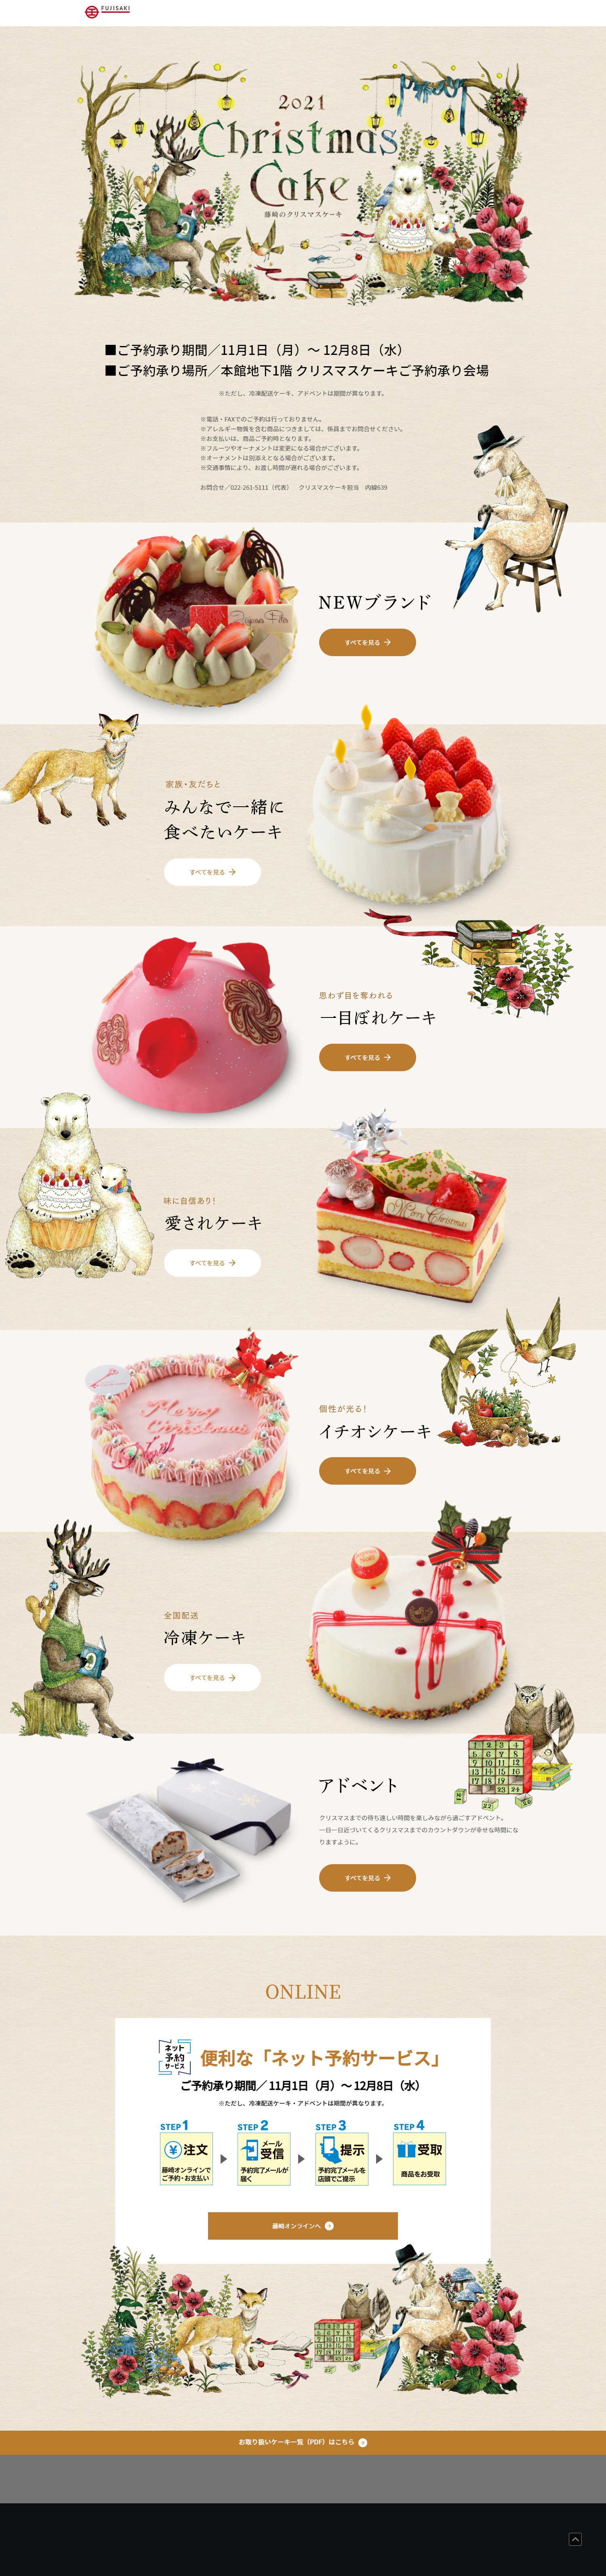 藤崎のクリスマスケーキ_pc_1